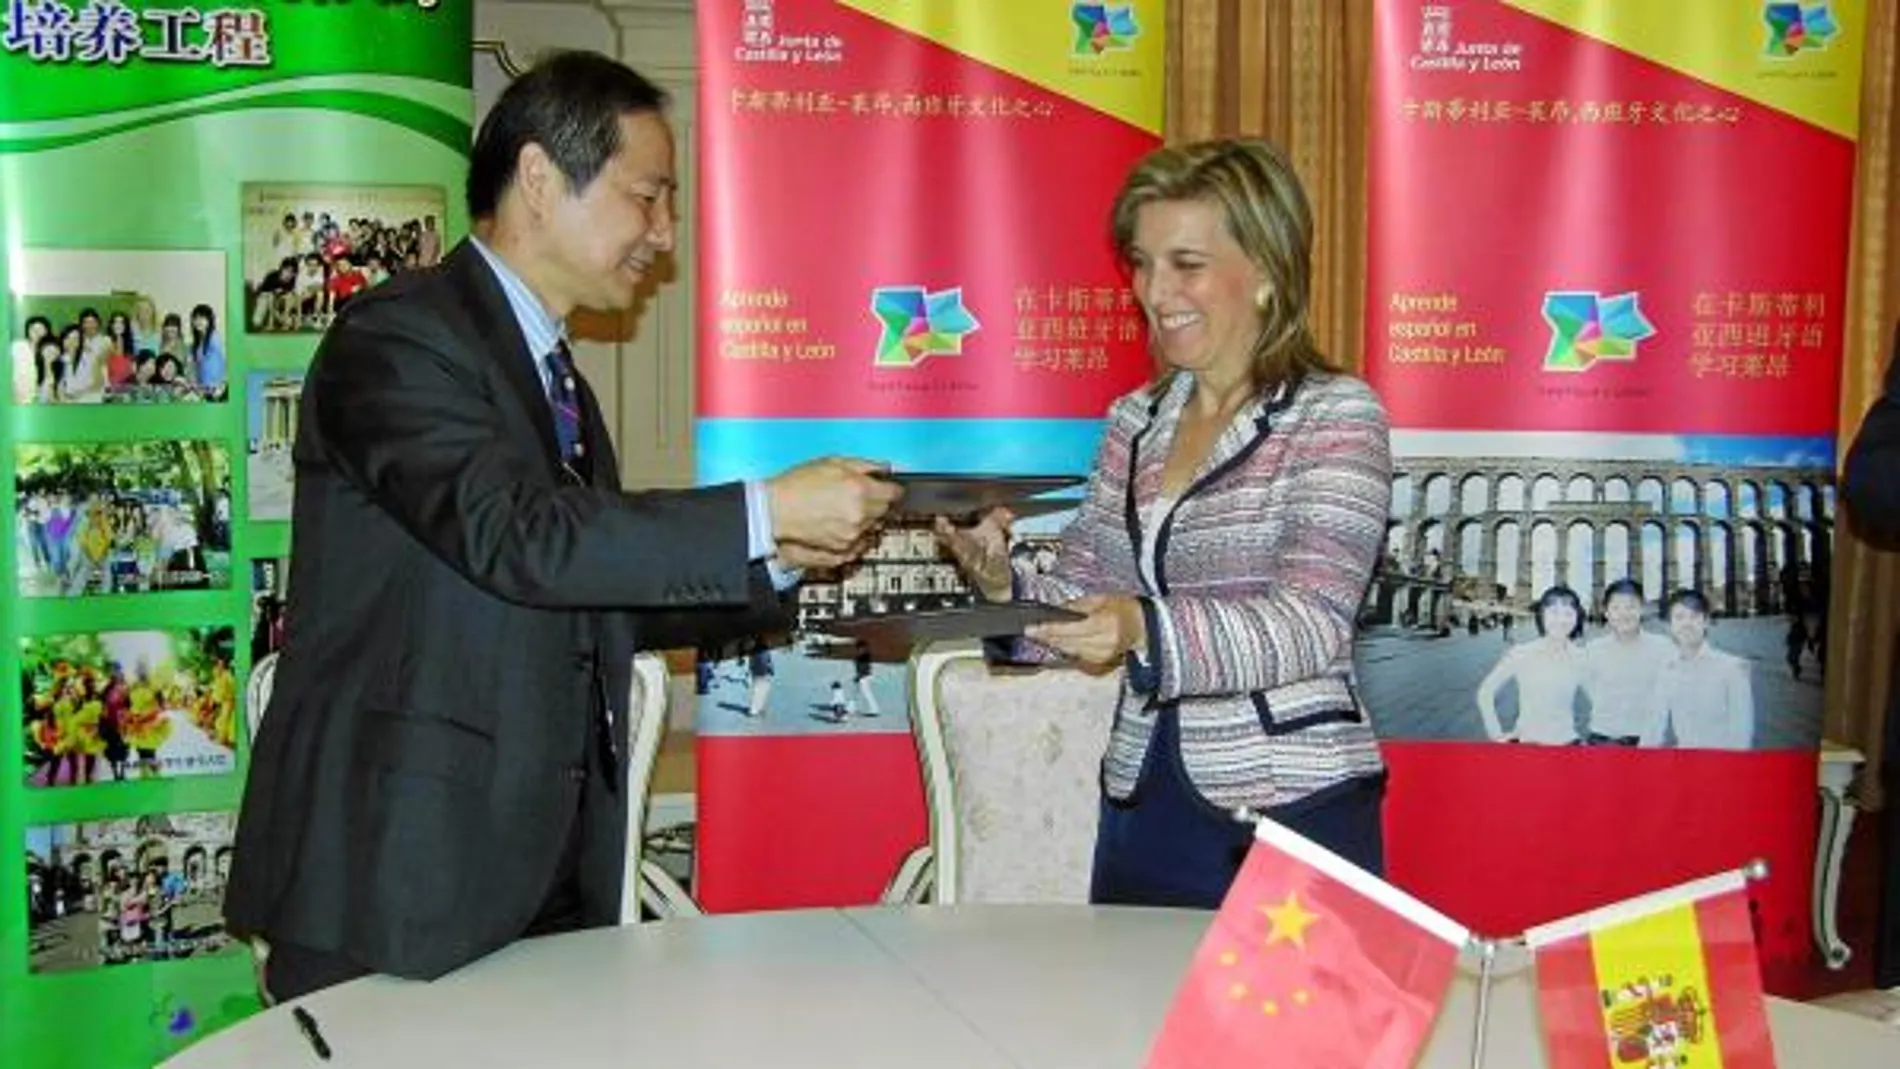 Castilla y León estará en los programas turísticos más potentes de China